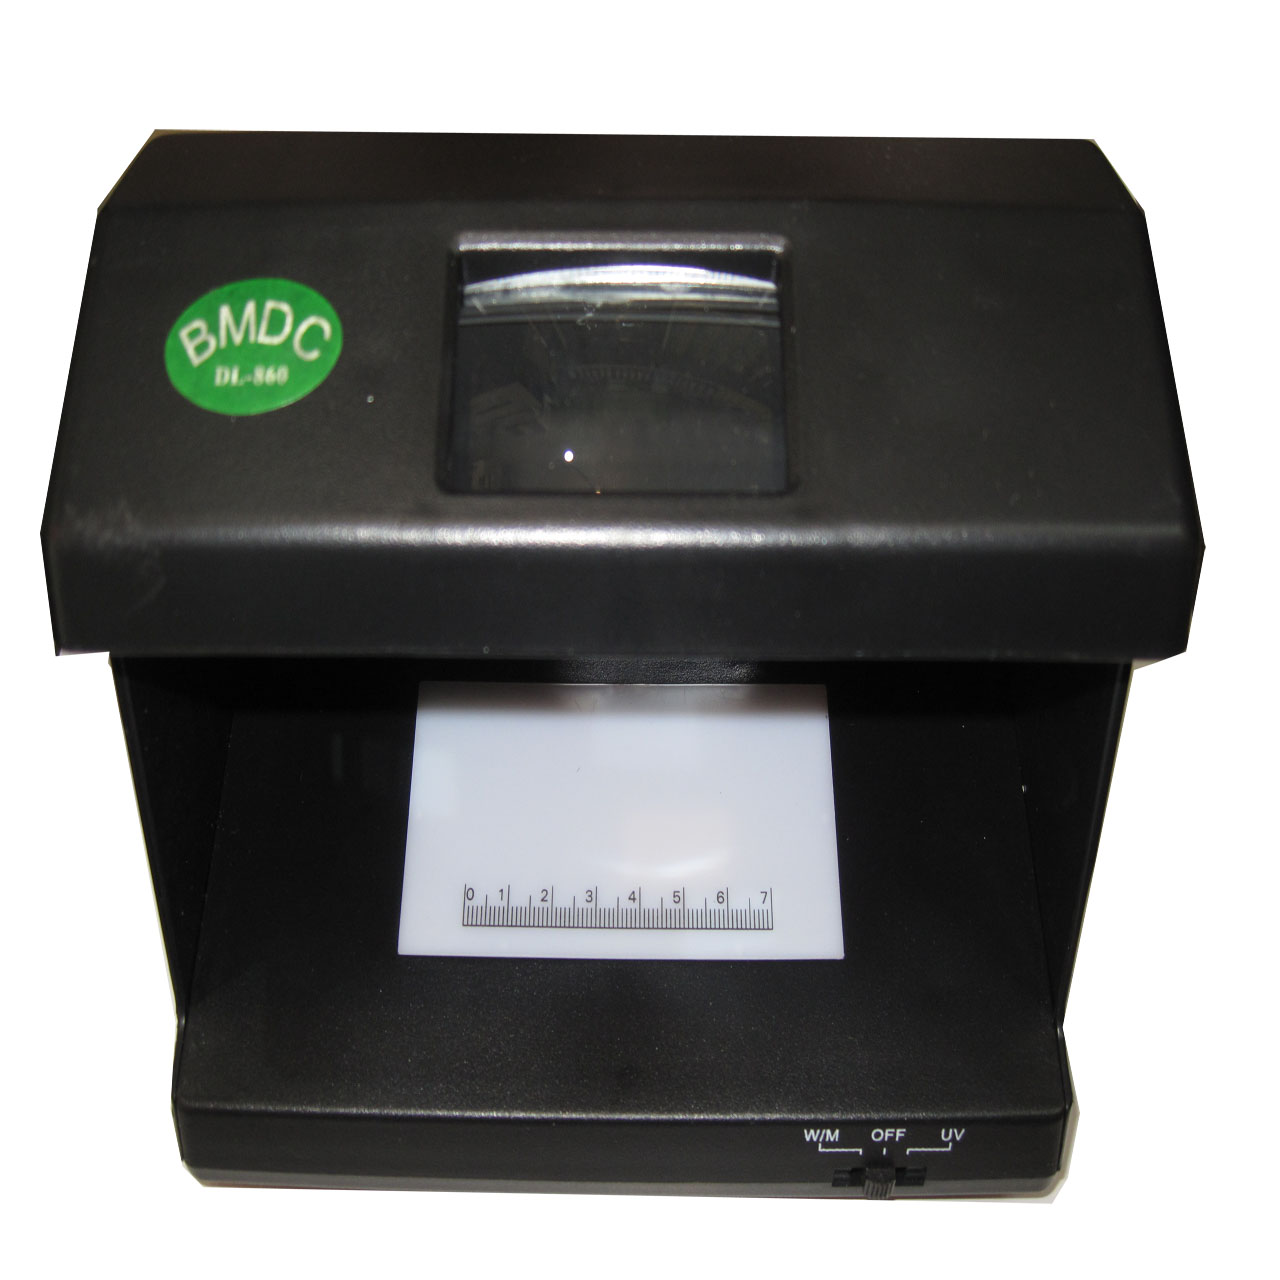 دستگاه تشخیص اصالت اسکناس BMDC مدل DL-860